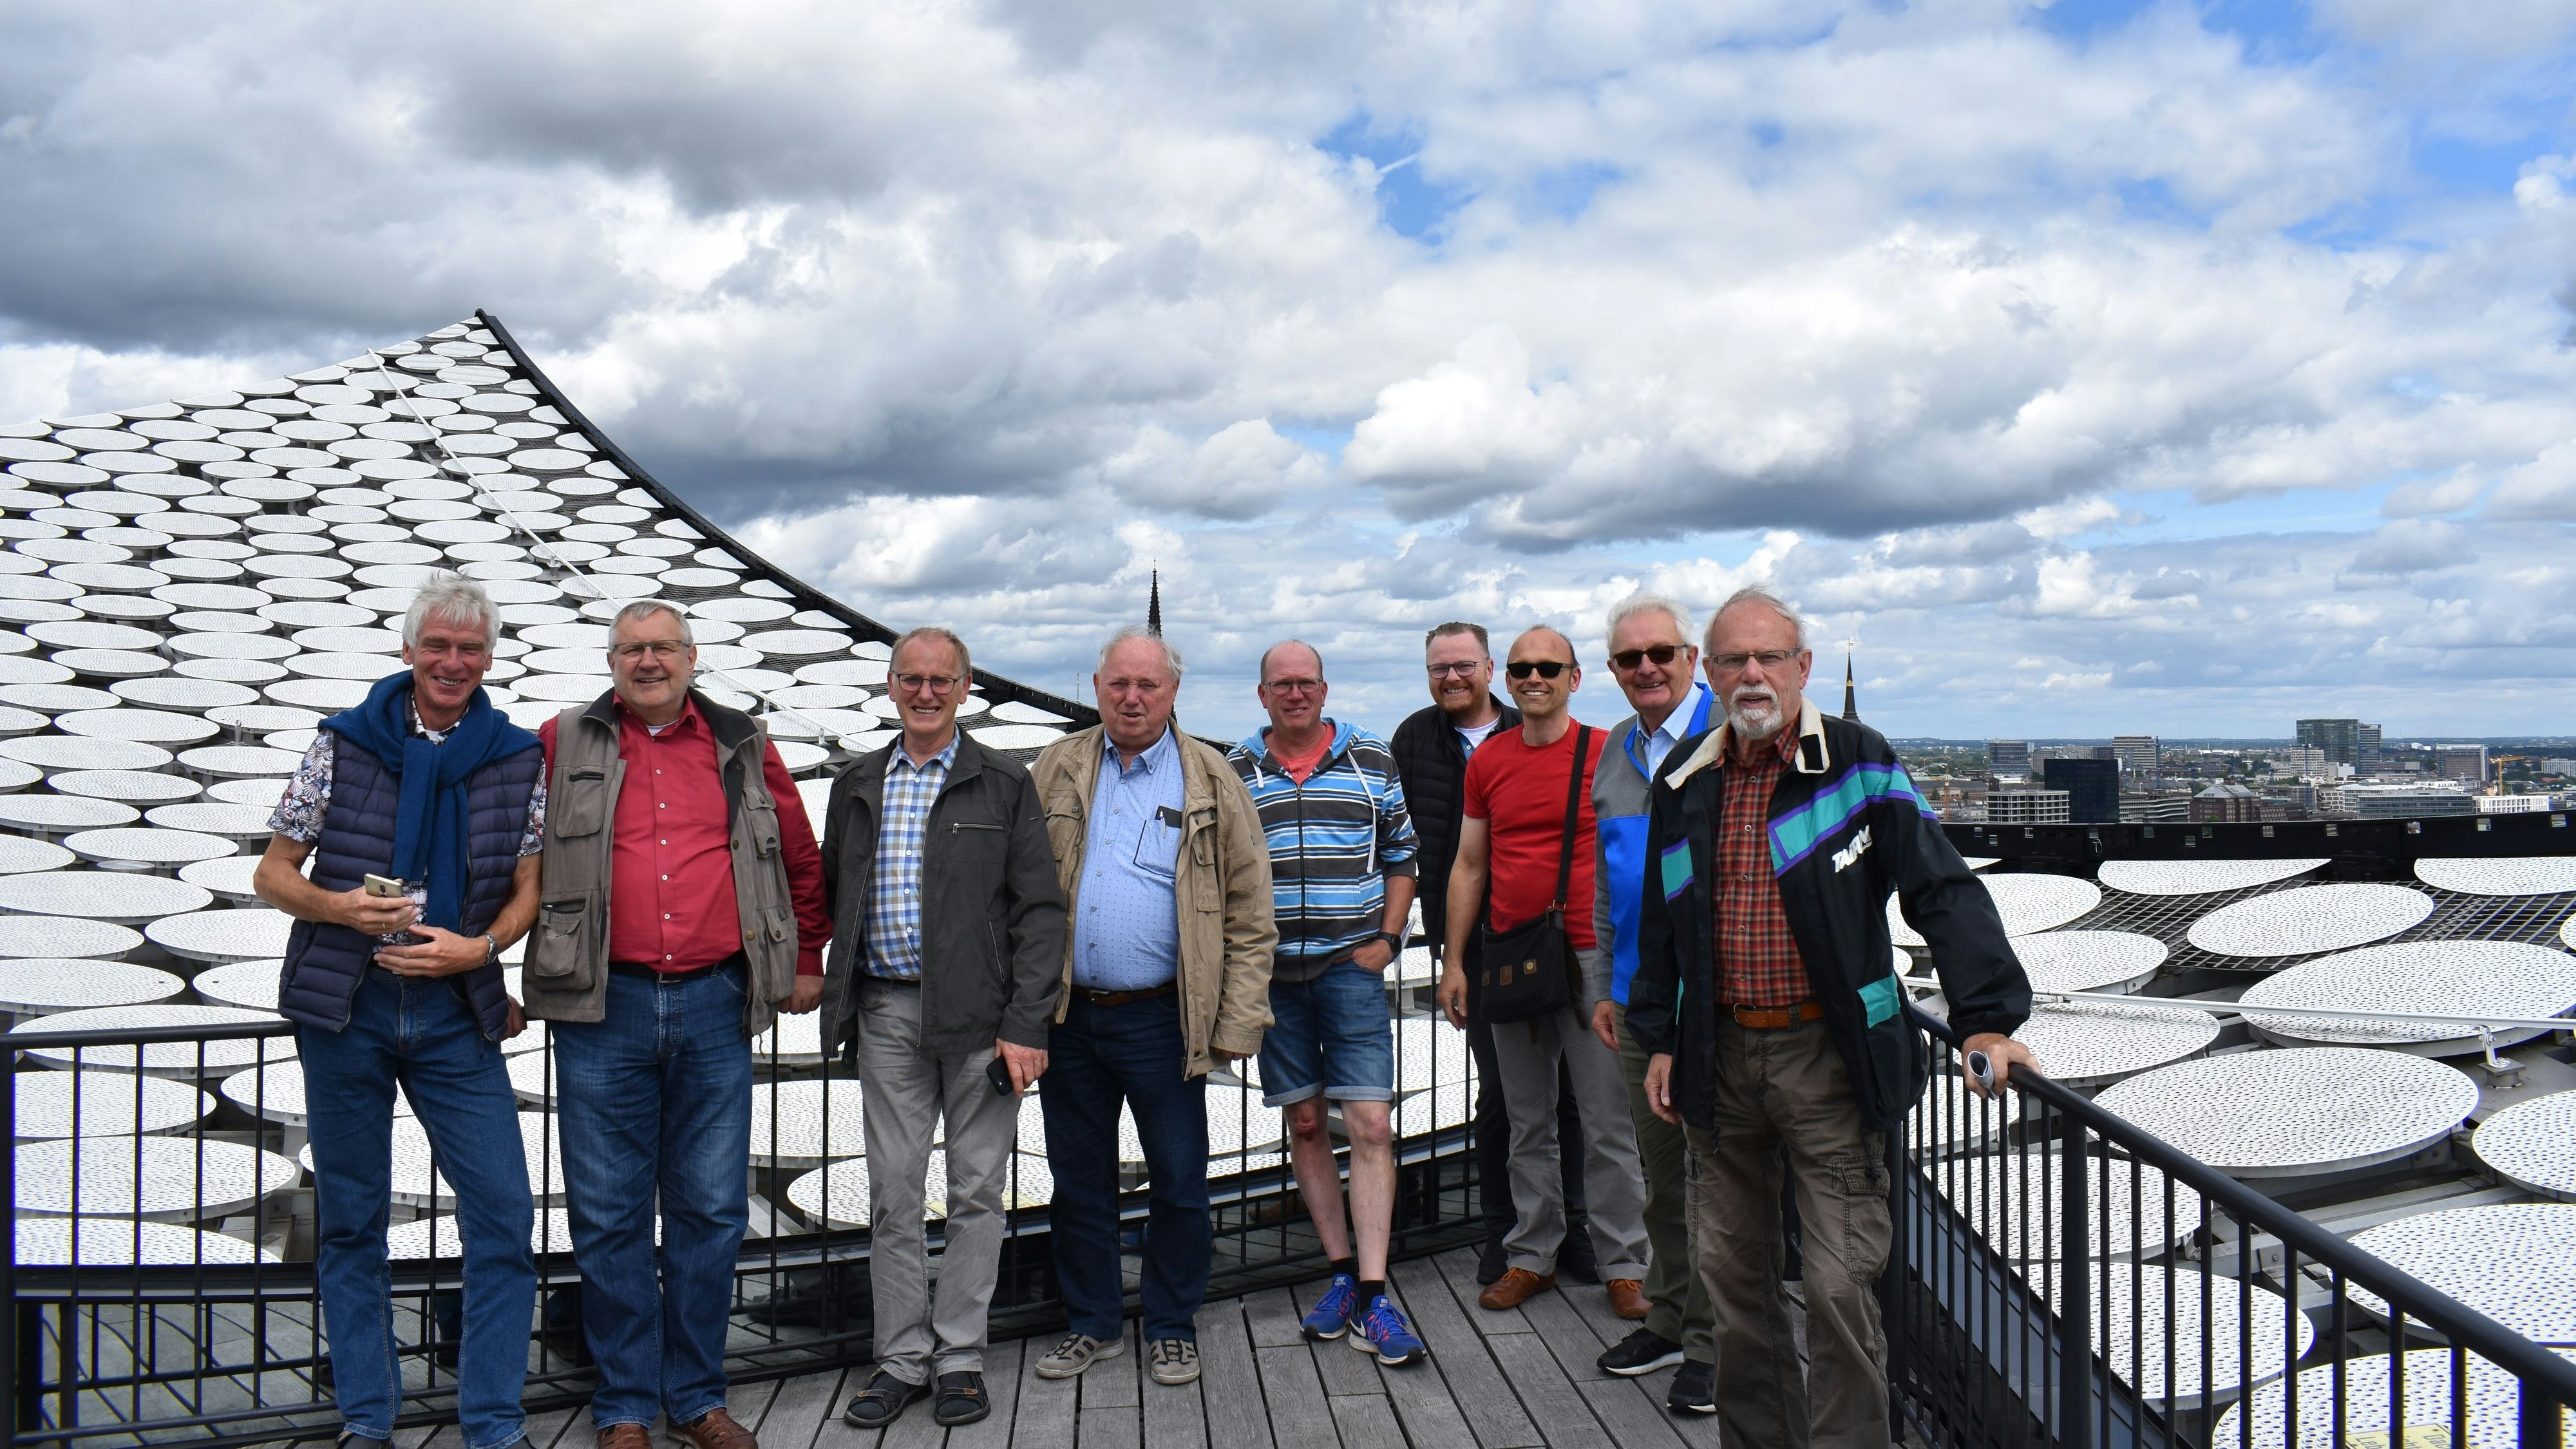 Hoch hinaus: Bis auf das Dach der Elbphilharmonie kamen die Männer des Gesangvereins Cäcilia bei der Besichtigung. Foto: Looschen